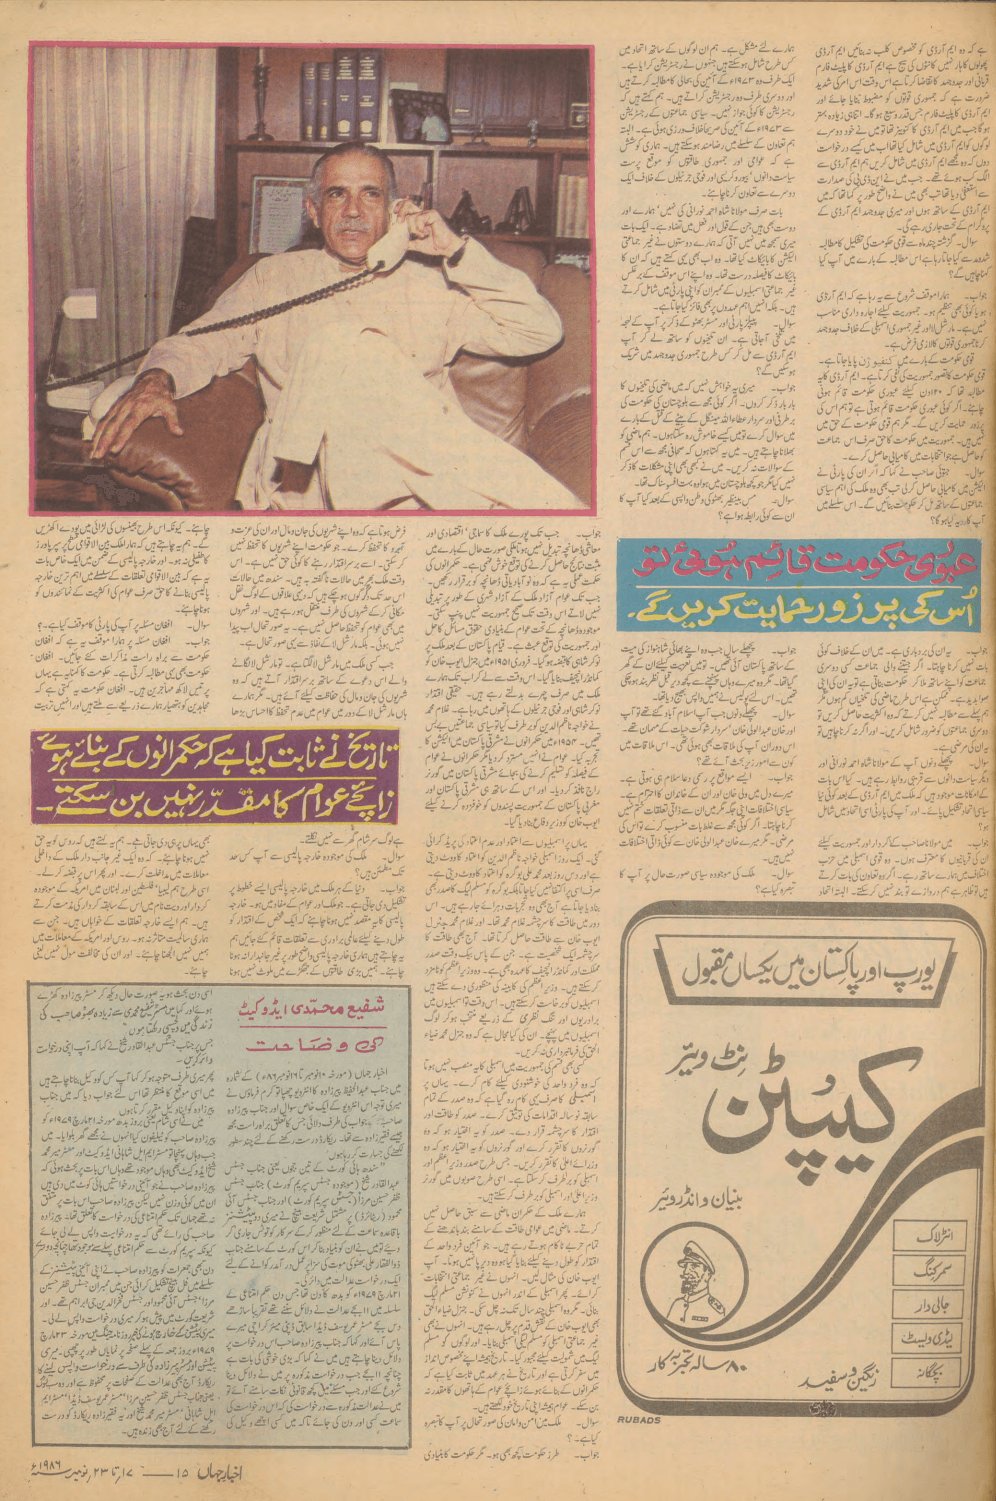 Akhbar-e-Jahan (Nov 23, 1986) - KHAJISTAN™